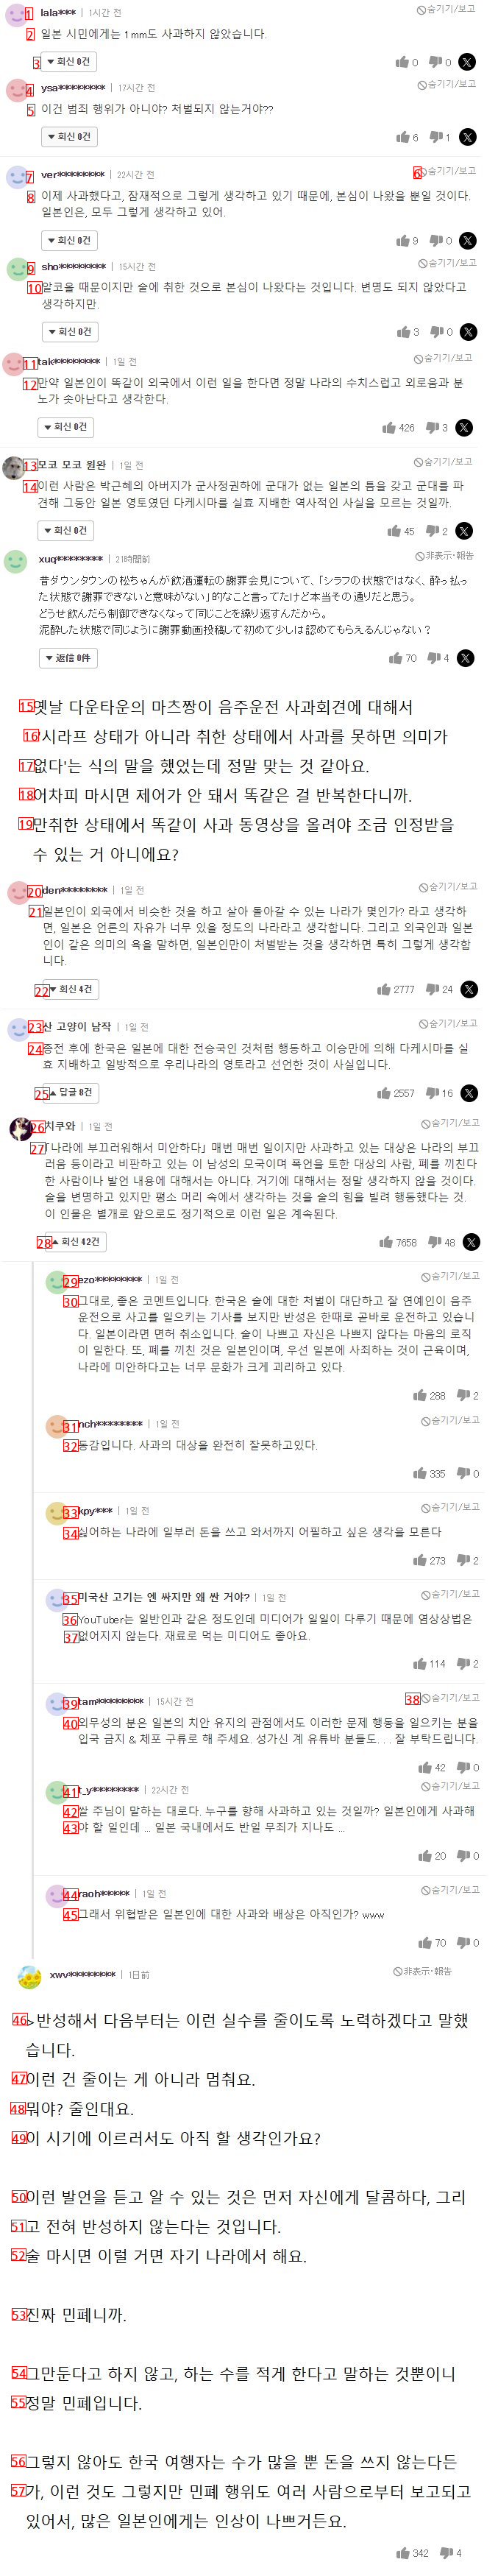 일본"""" 한국은 우리한테 사과해야지.."""" 야구선수 알몸사건